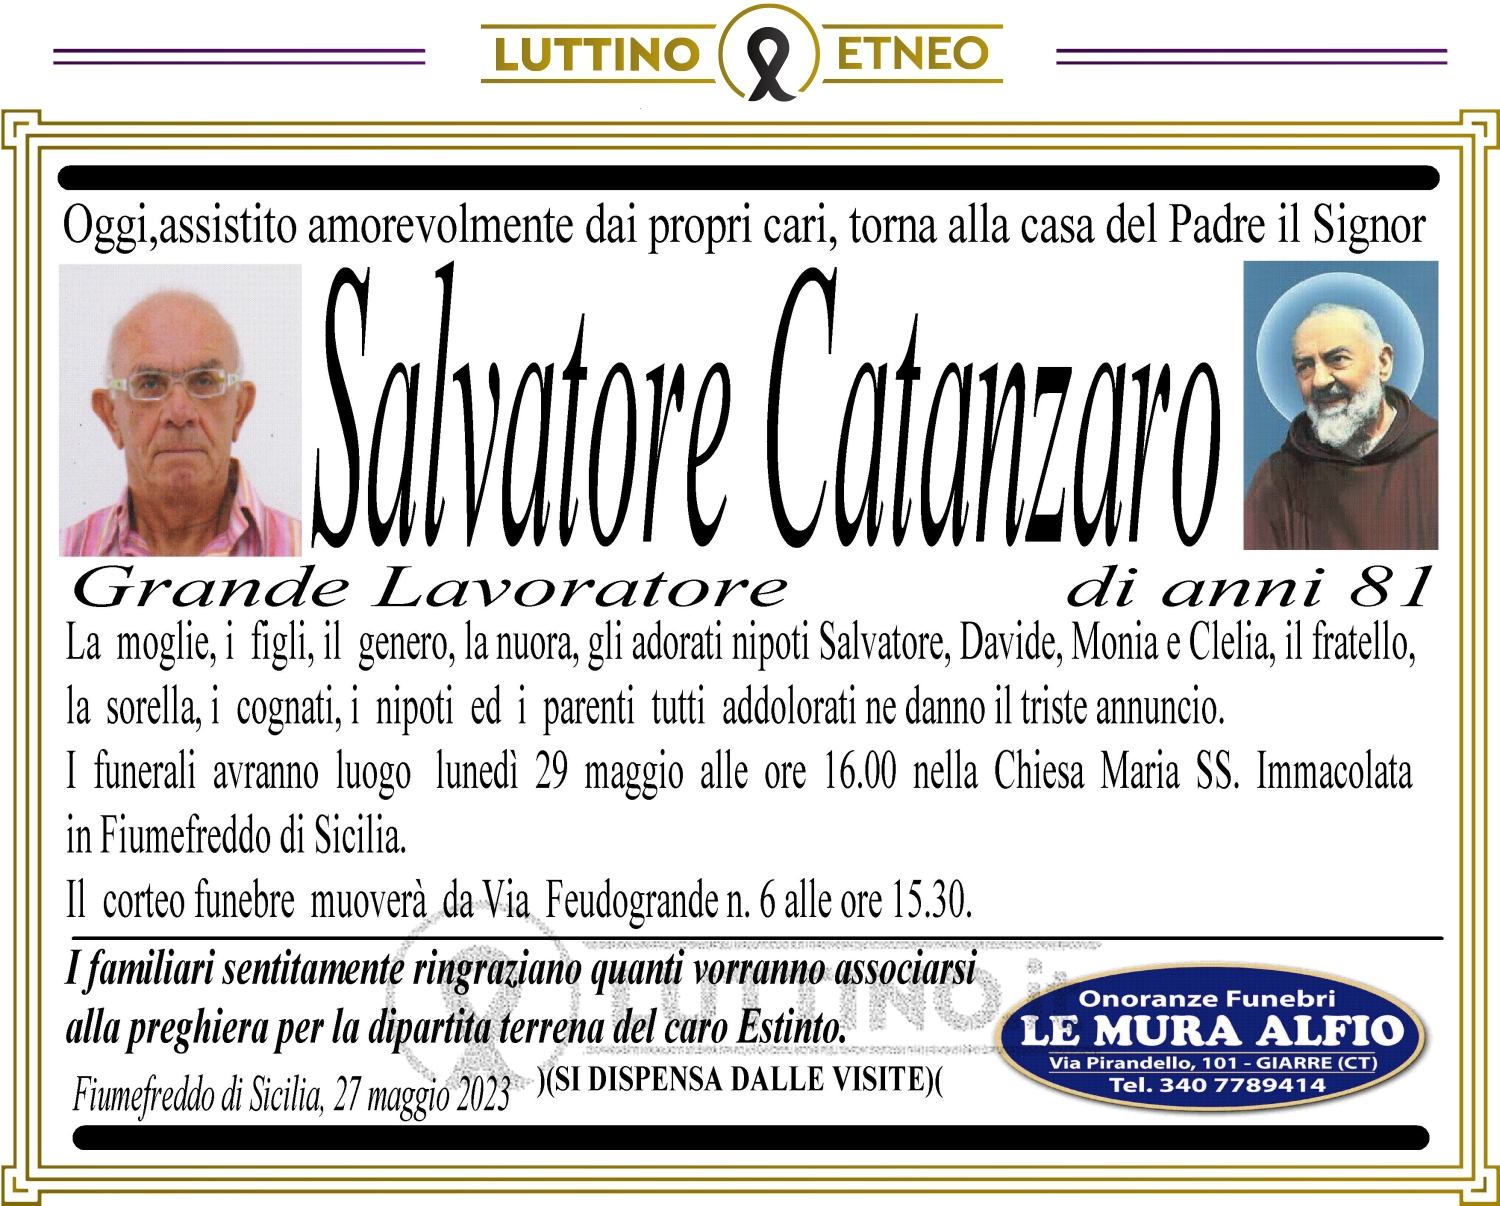 Salvatore Catanzaro